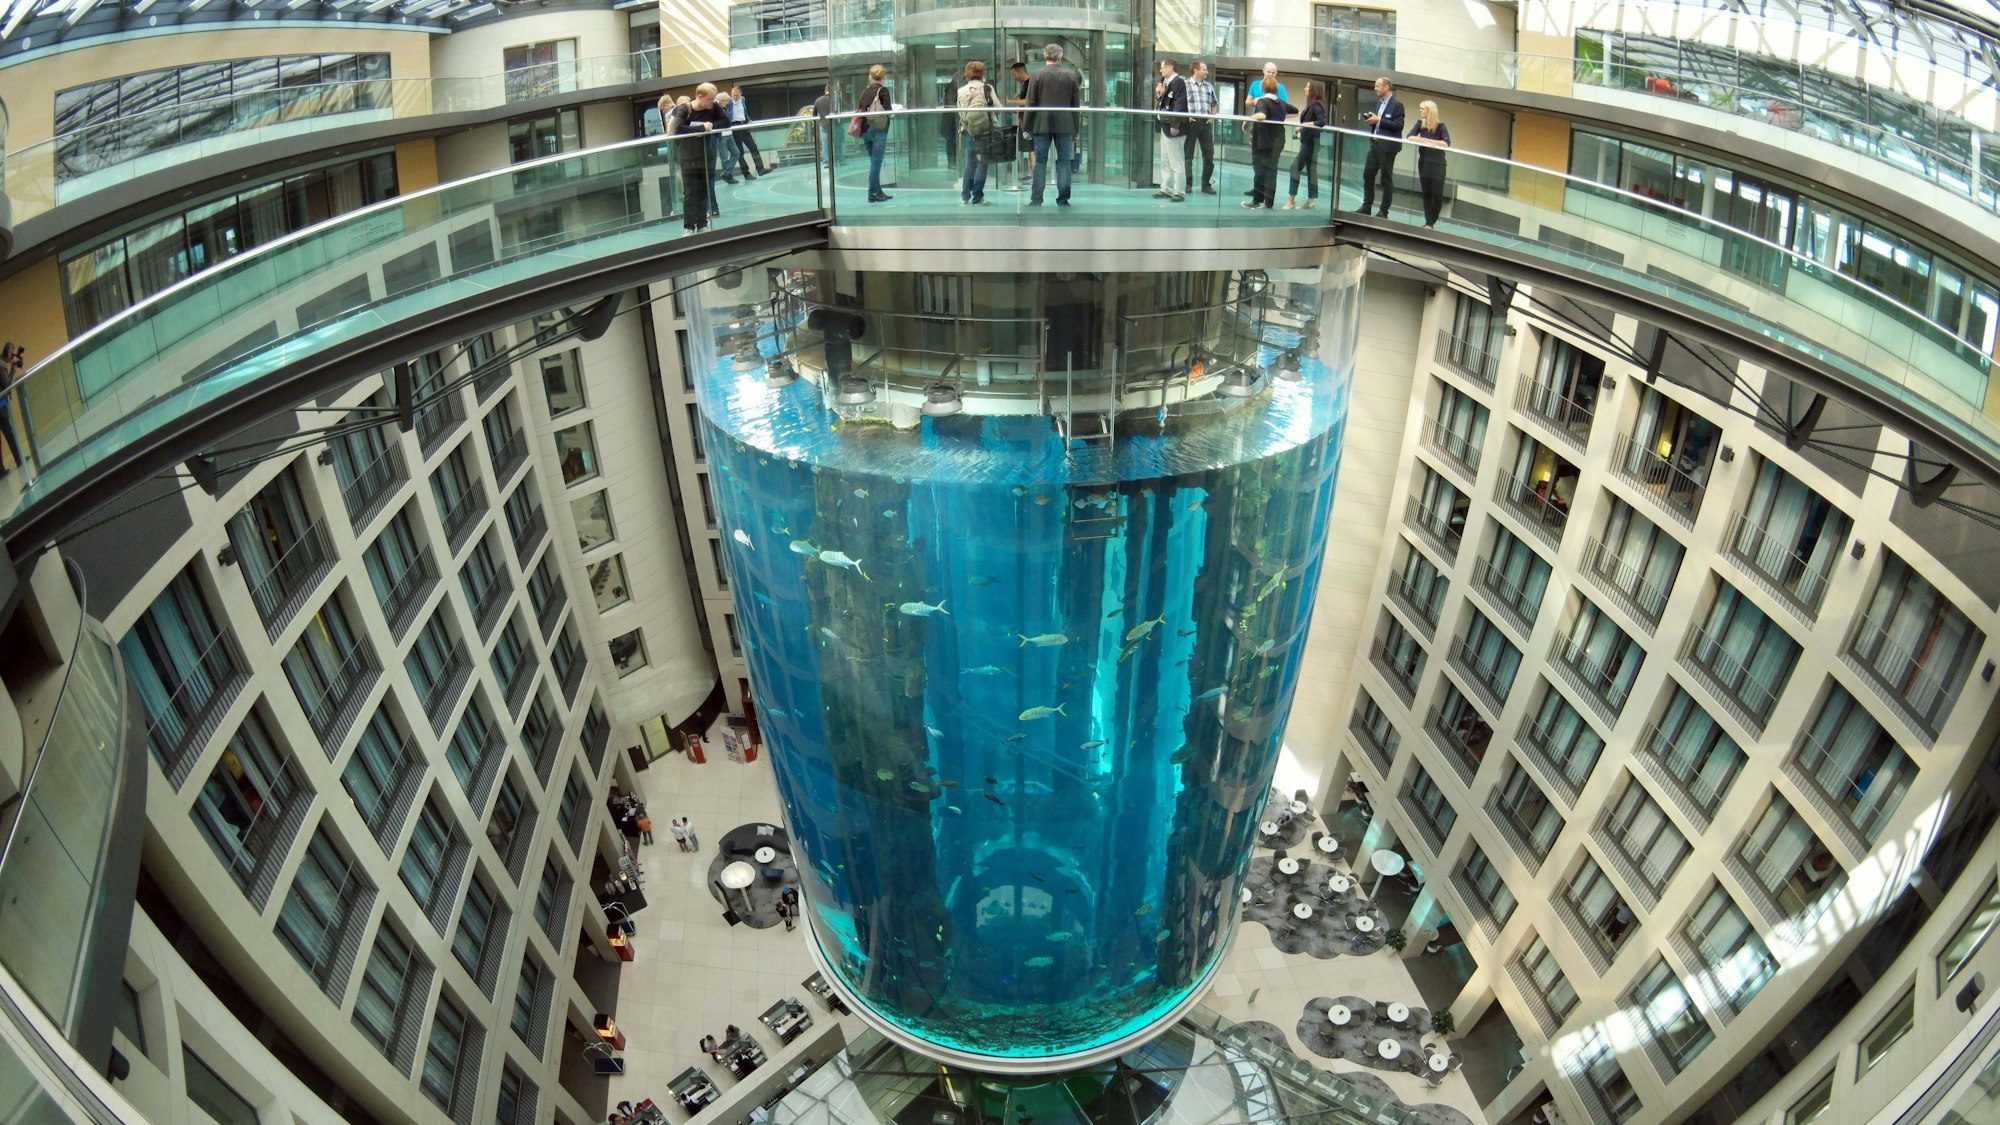 Blick auf den AquaDom im Sea Life, das größte freistehende zylindrische Aquarium der Welt. Das riesige Aquarium in einem Hotel ist in der Nacht zum 16.12.2022 leck geschlagen.Wasser strömte dabei bis auf die Straße.